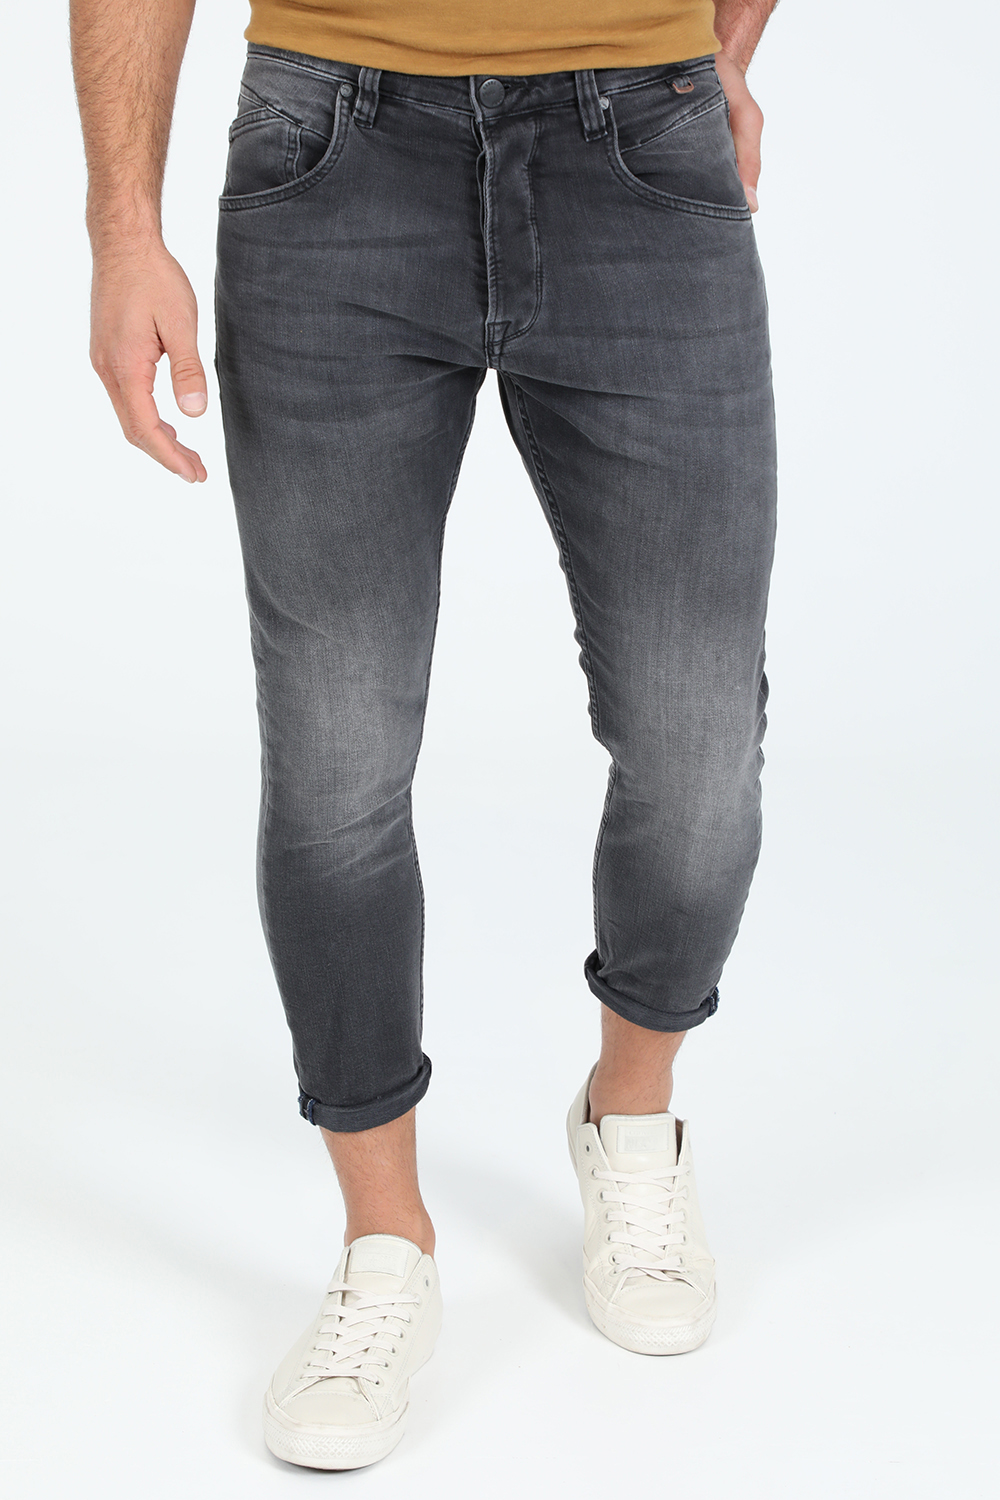 Ανδρικά/Ρούχα/Τζίν/Straight GABBA - Ανδρικό jean παντελόνι GABBA Alex Thor μαύρο